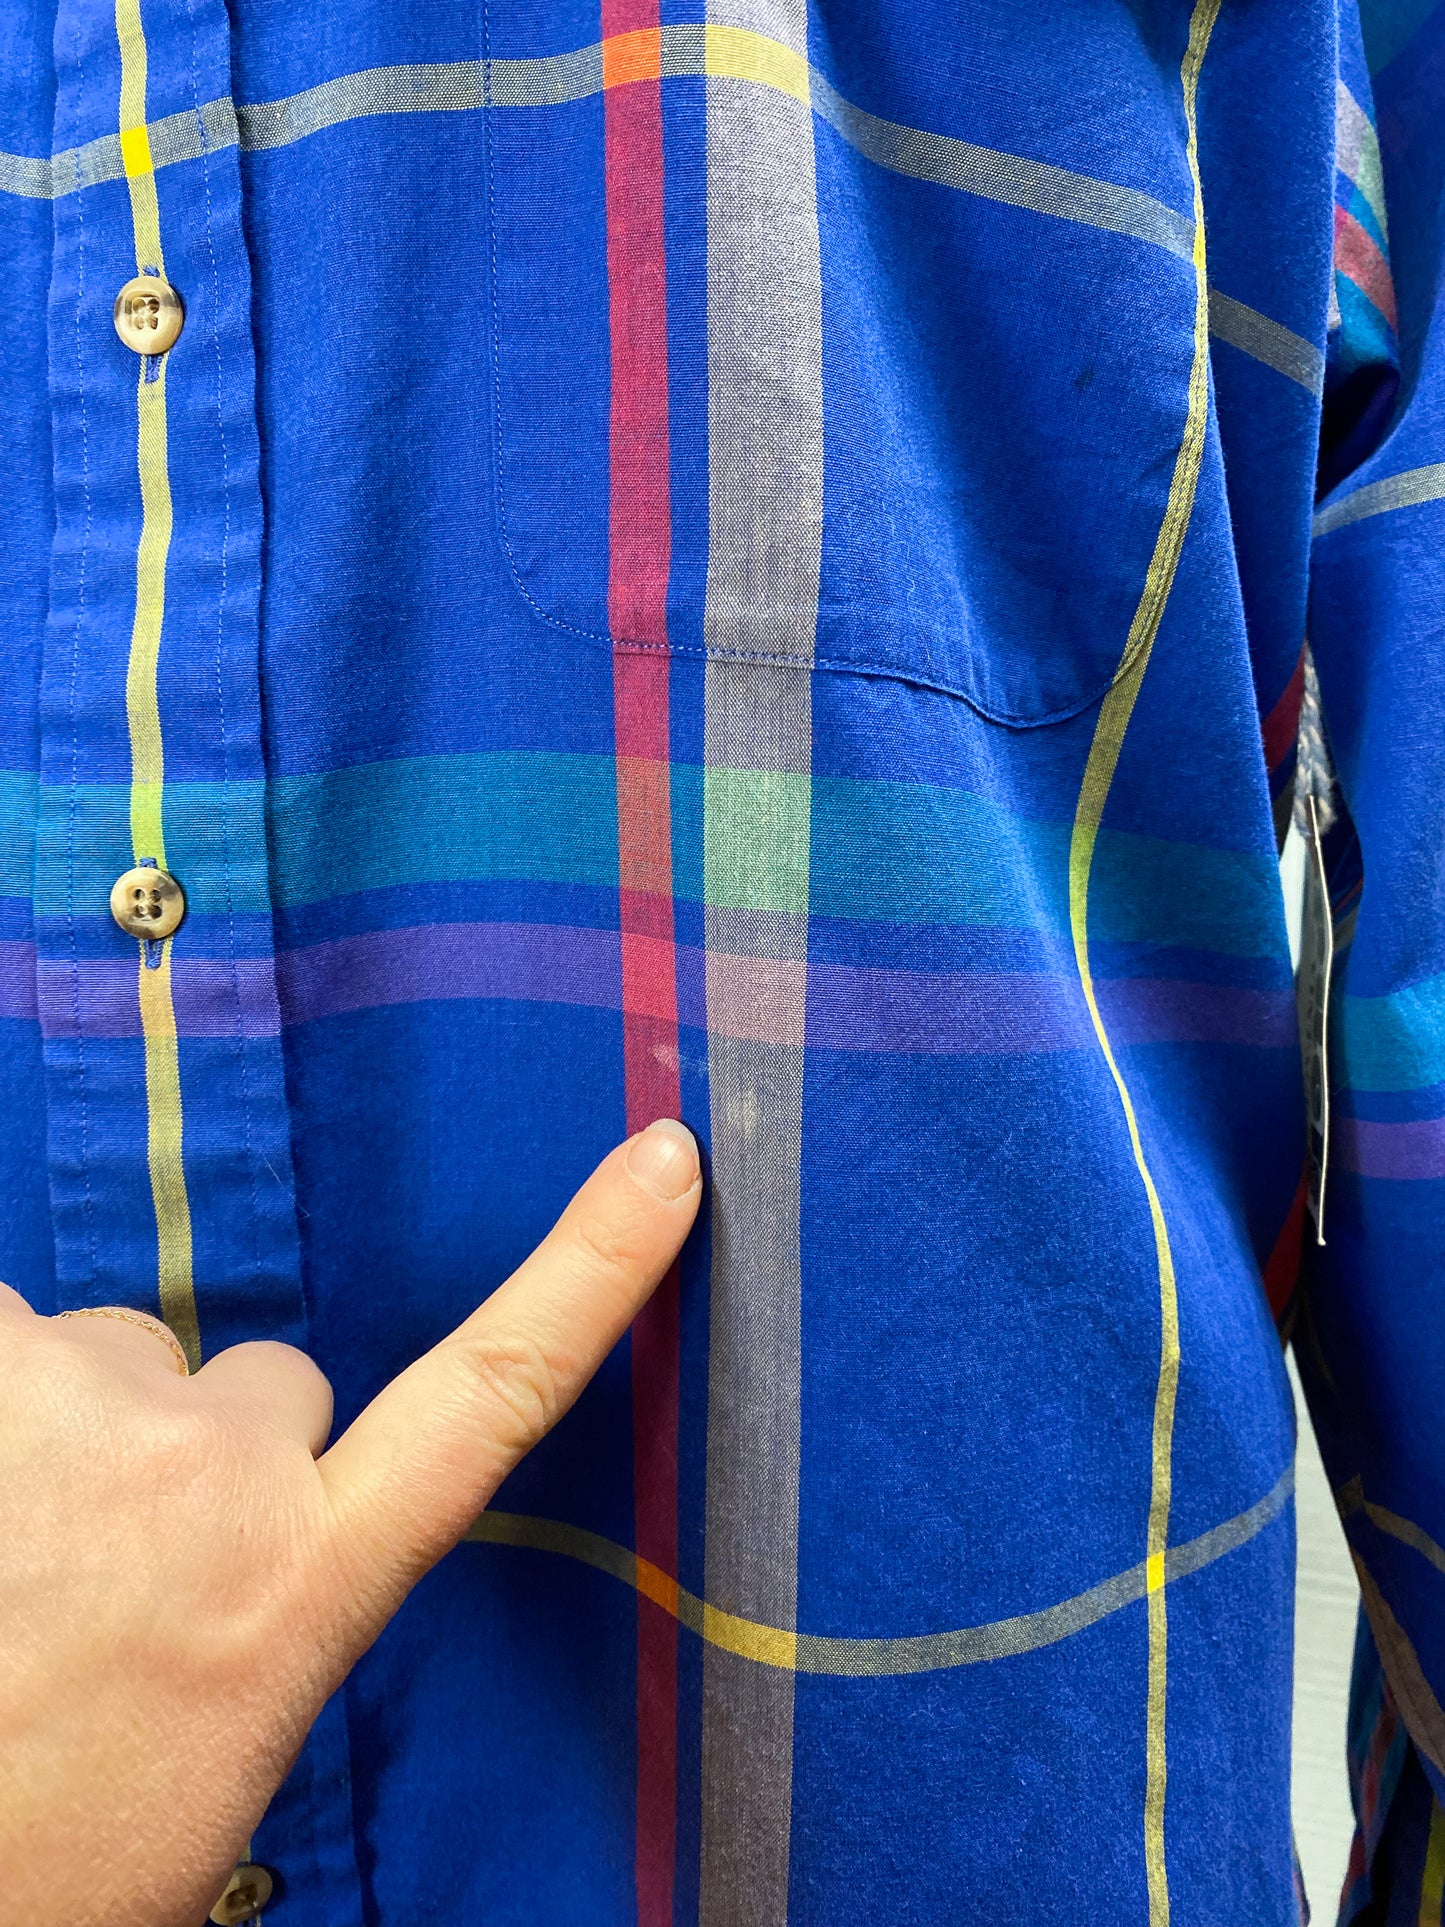 80's 90's GANT Vintage Button Down Casual Dress Shirt Royal Blue Foxhunt Plaid L